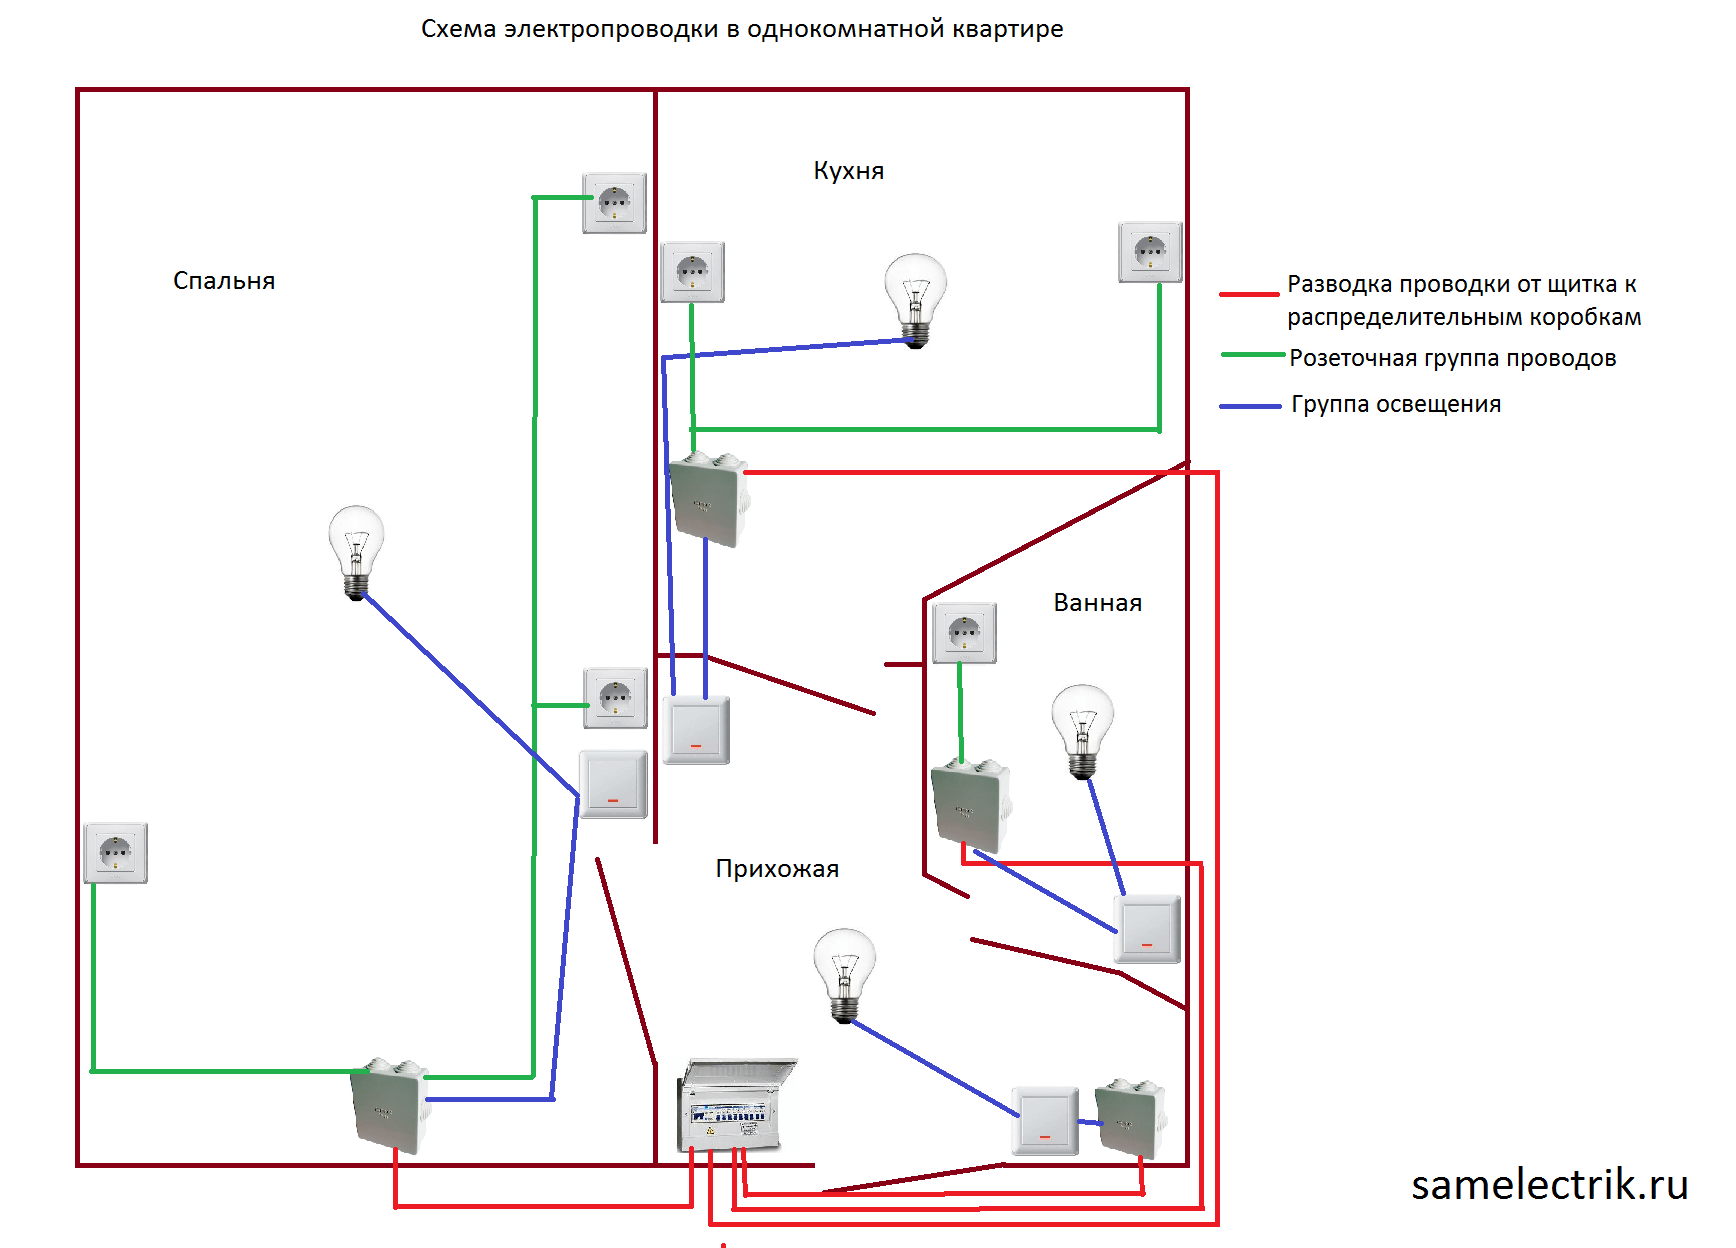 Определяем расположение проводки в панельном доме